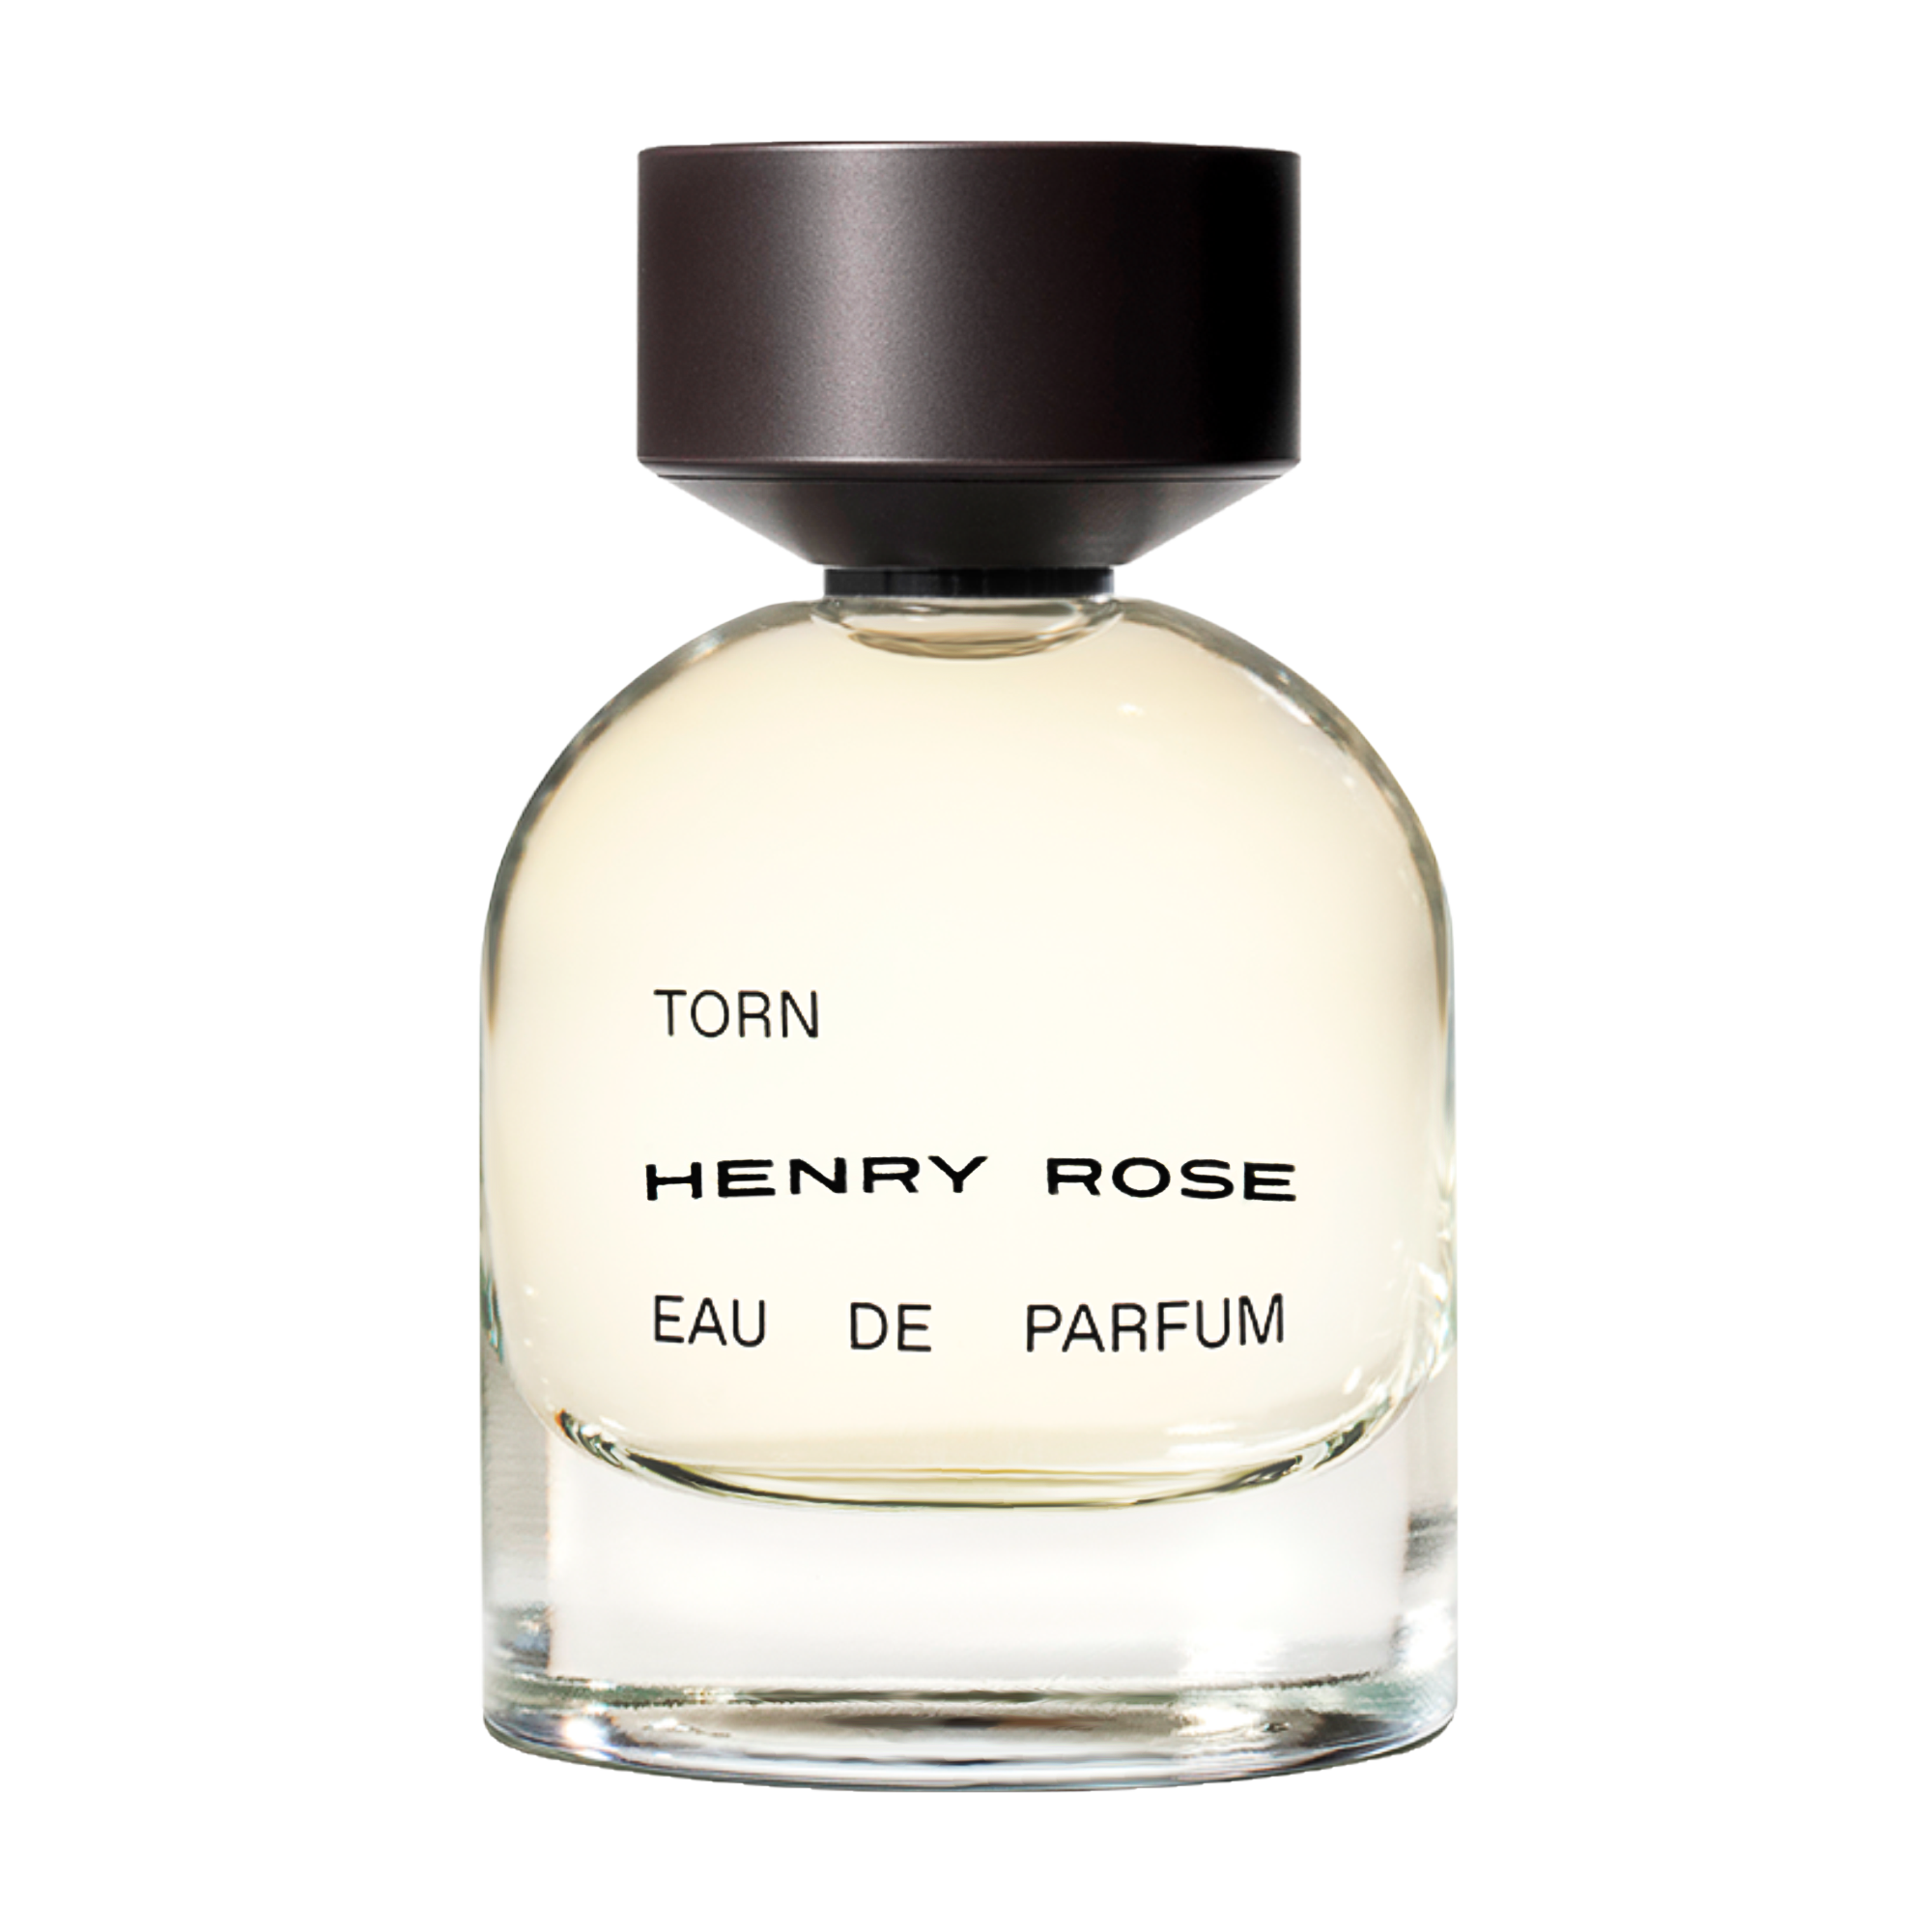 Henry Rose Torn Eau de Parfum, 1.7 oz